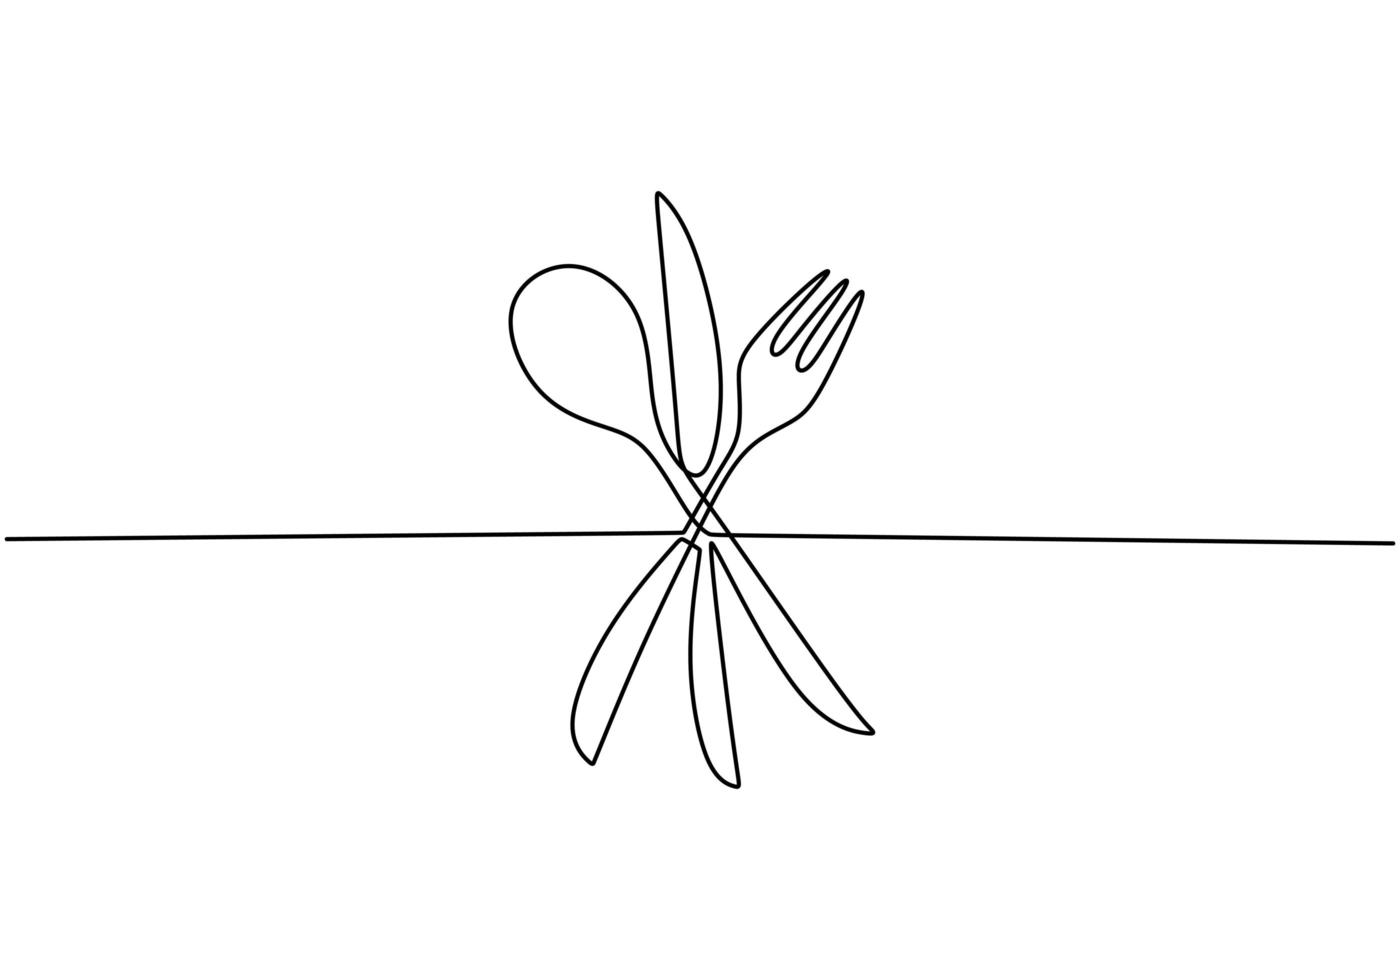 segno di cibo continuo di un disegno a tratteggio, vettore di cucchiaio, forchetta e coltello. design minimalista con semplicità disegnata a mano isolato su sfondo bianco, contorno minimalista disegnato a mano.